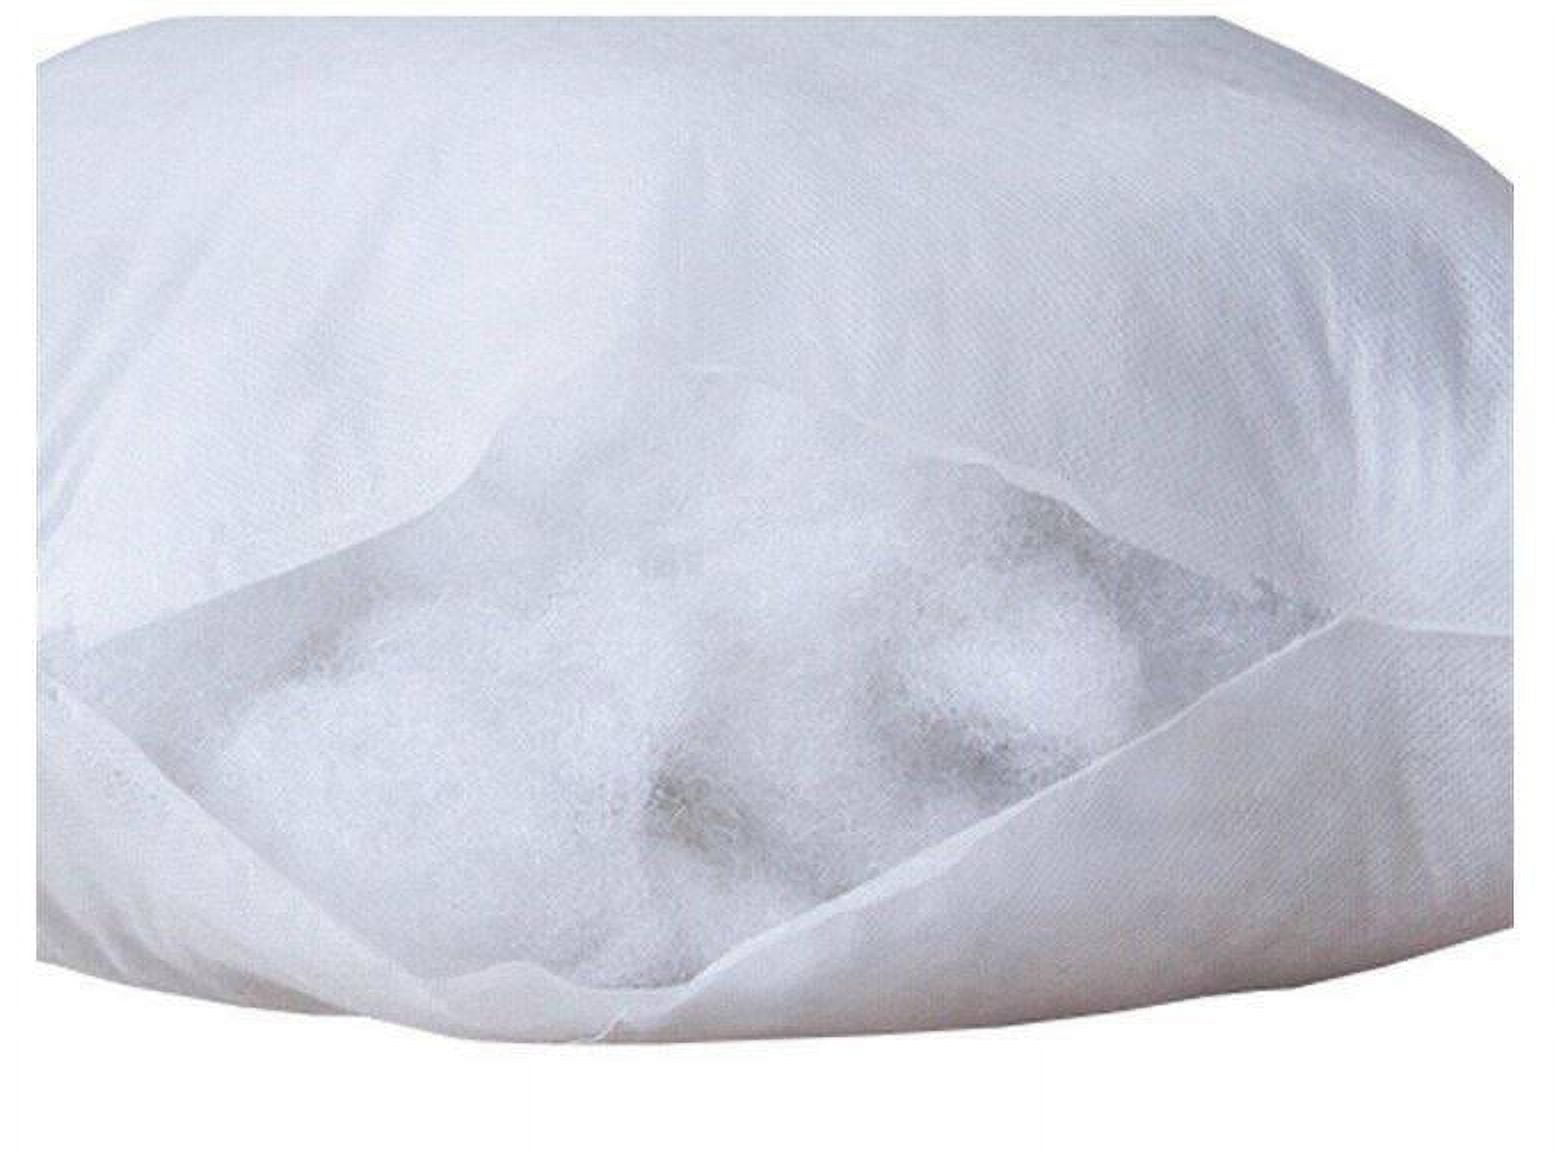 White Washable Polyester Pillows (pfa906)